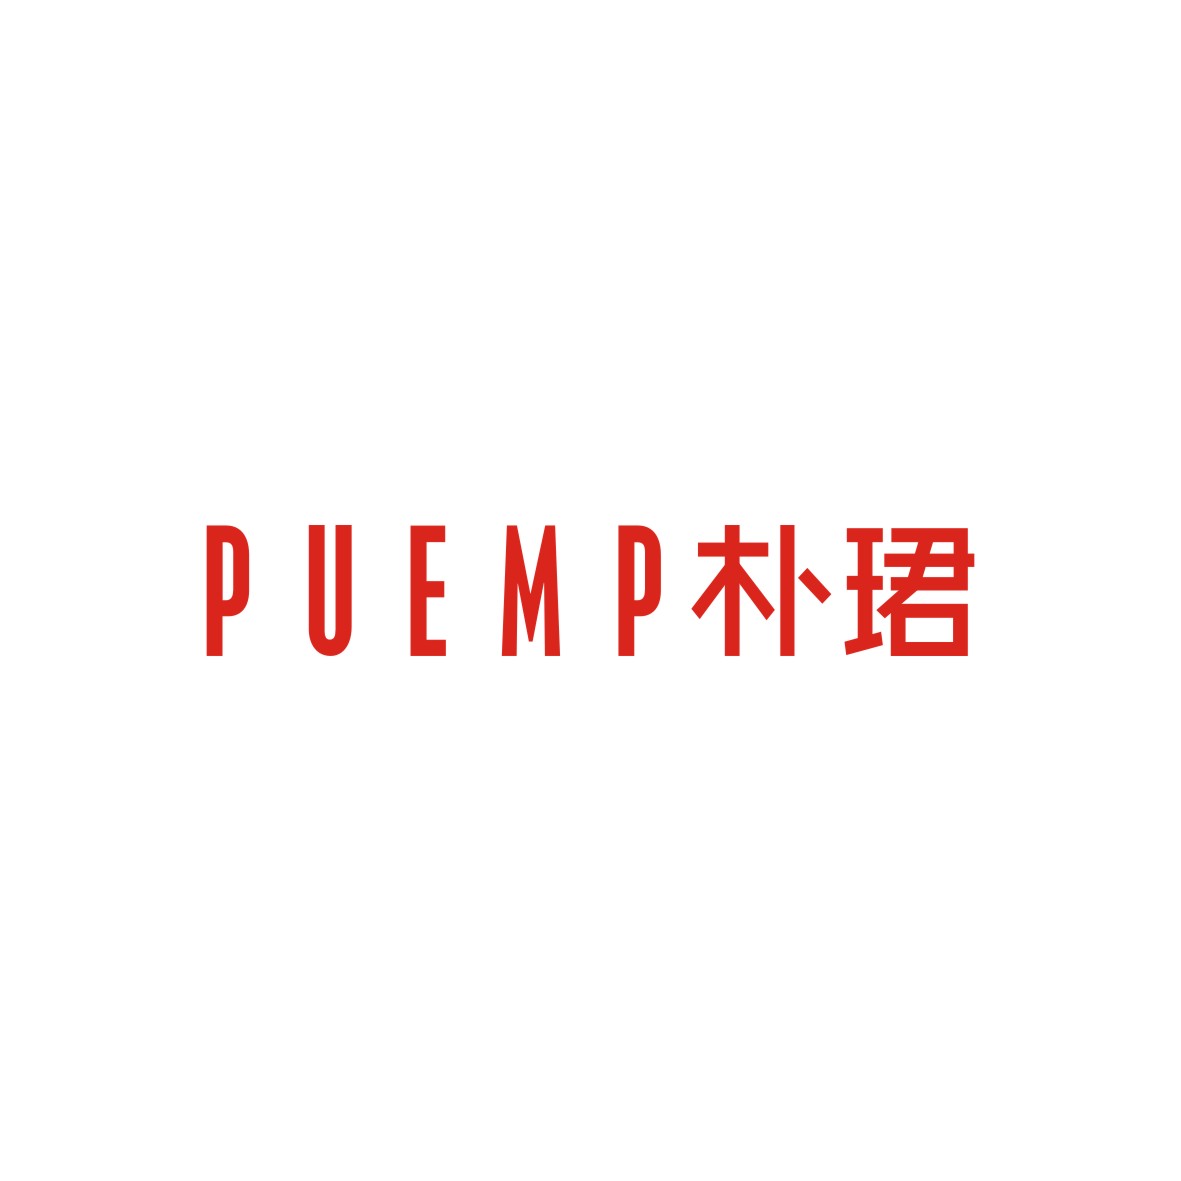 胡江礼商标朴珺 PUEMP（18类）商标买卖平台报价，上哪个平台最省钱？